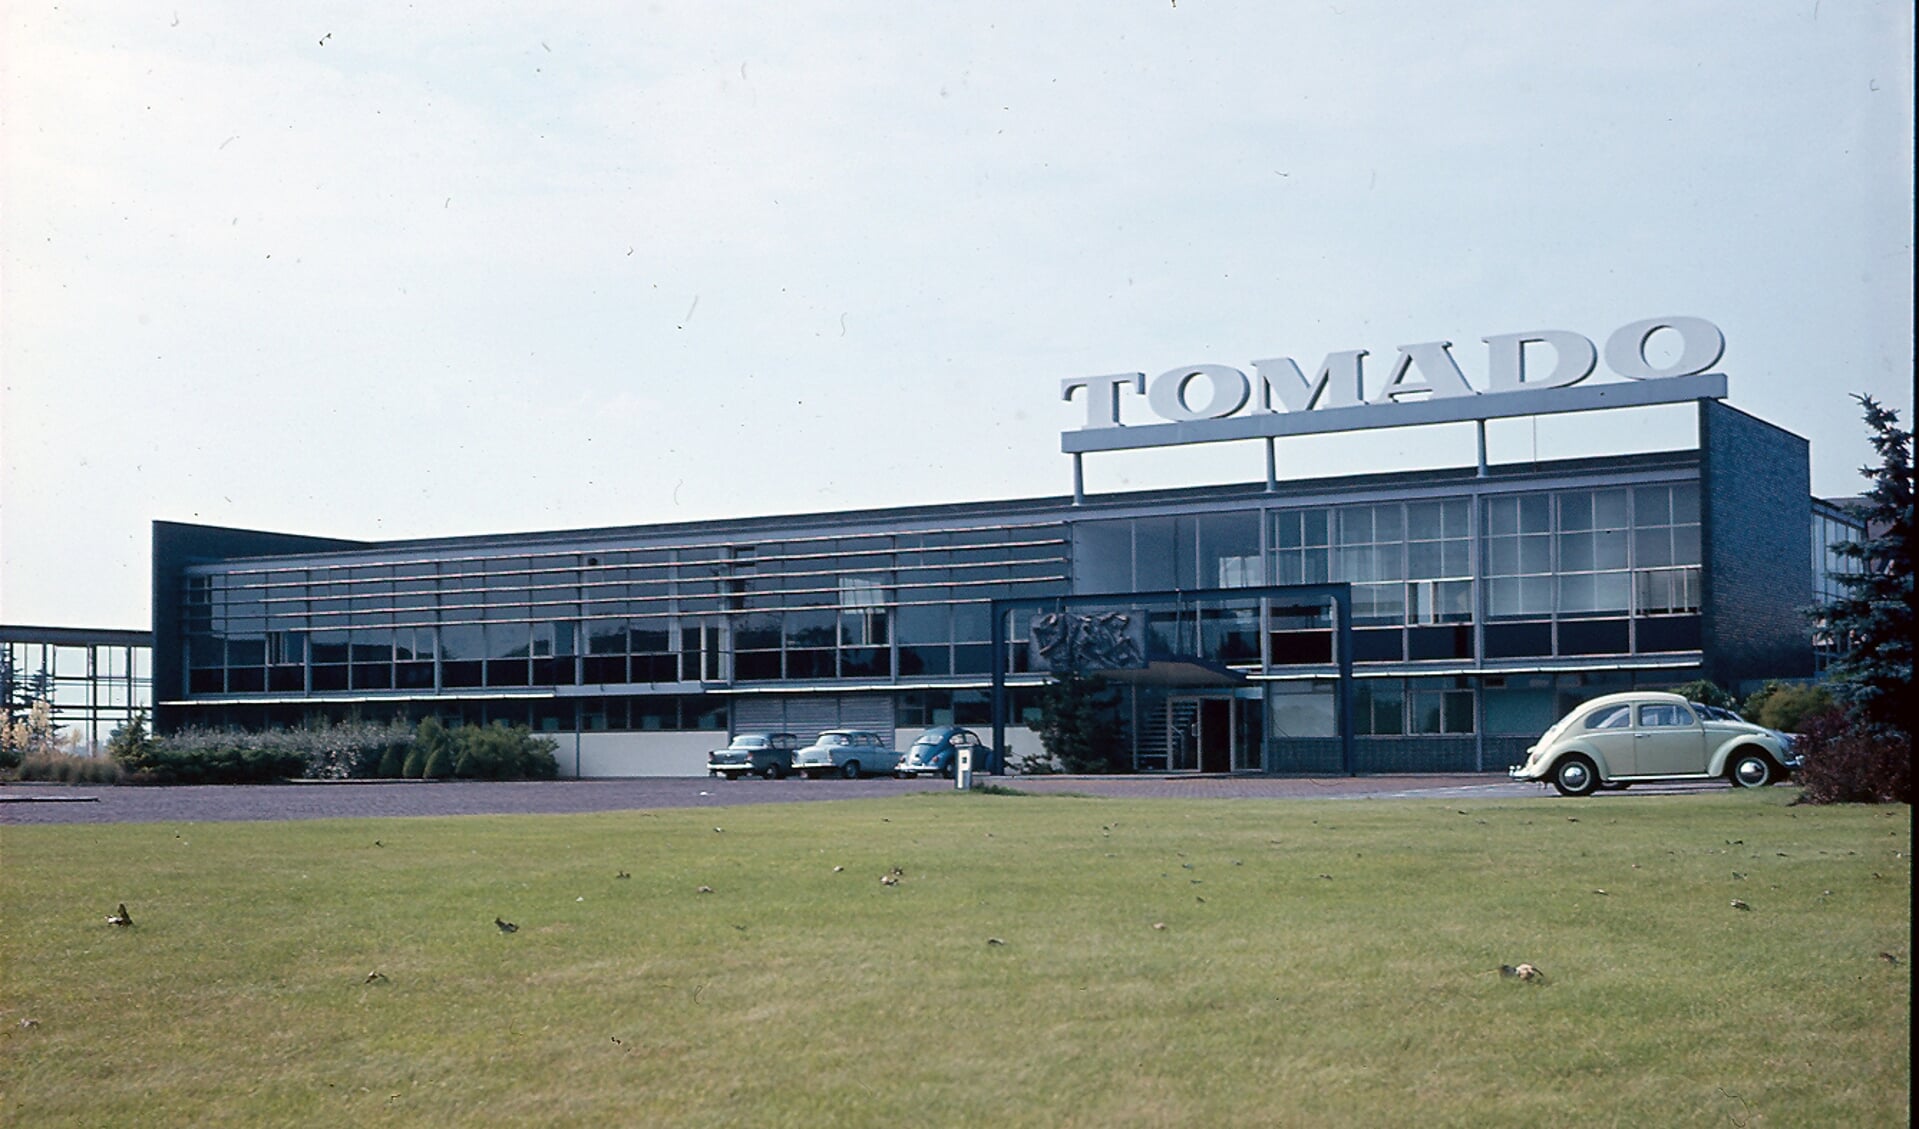 Duizenden mensen werkten ooit bij Tomado. 